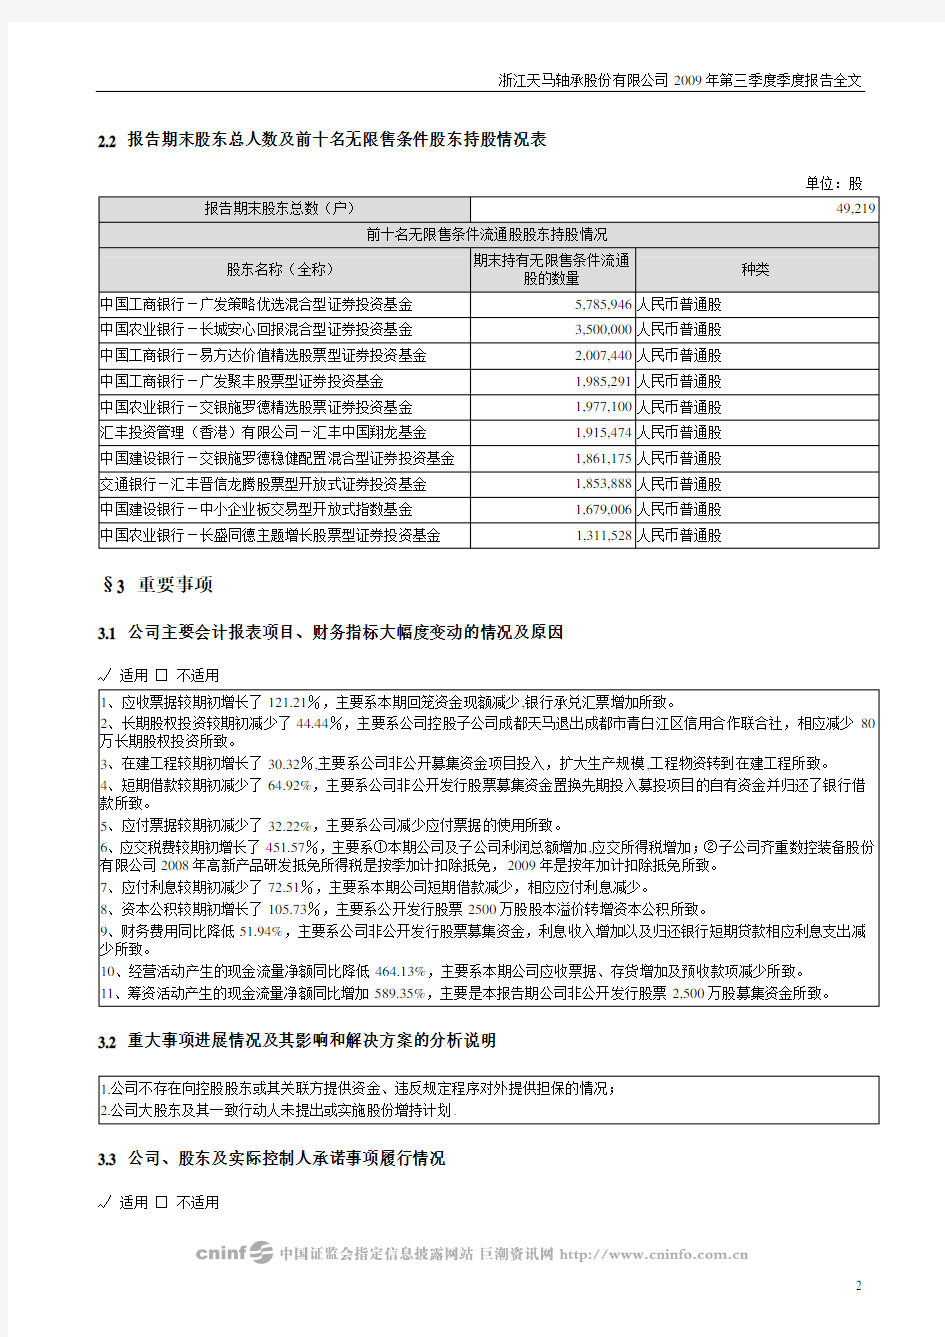 浙江天马轴承股份有限公司2009年第三季度季度报告全文